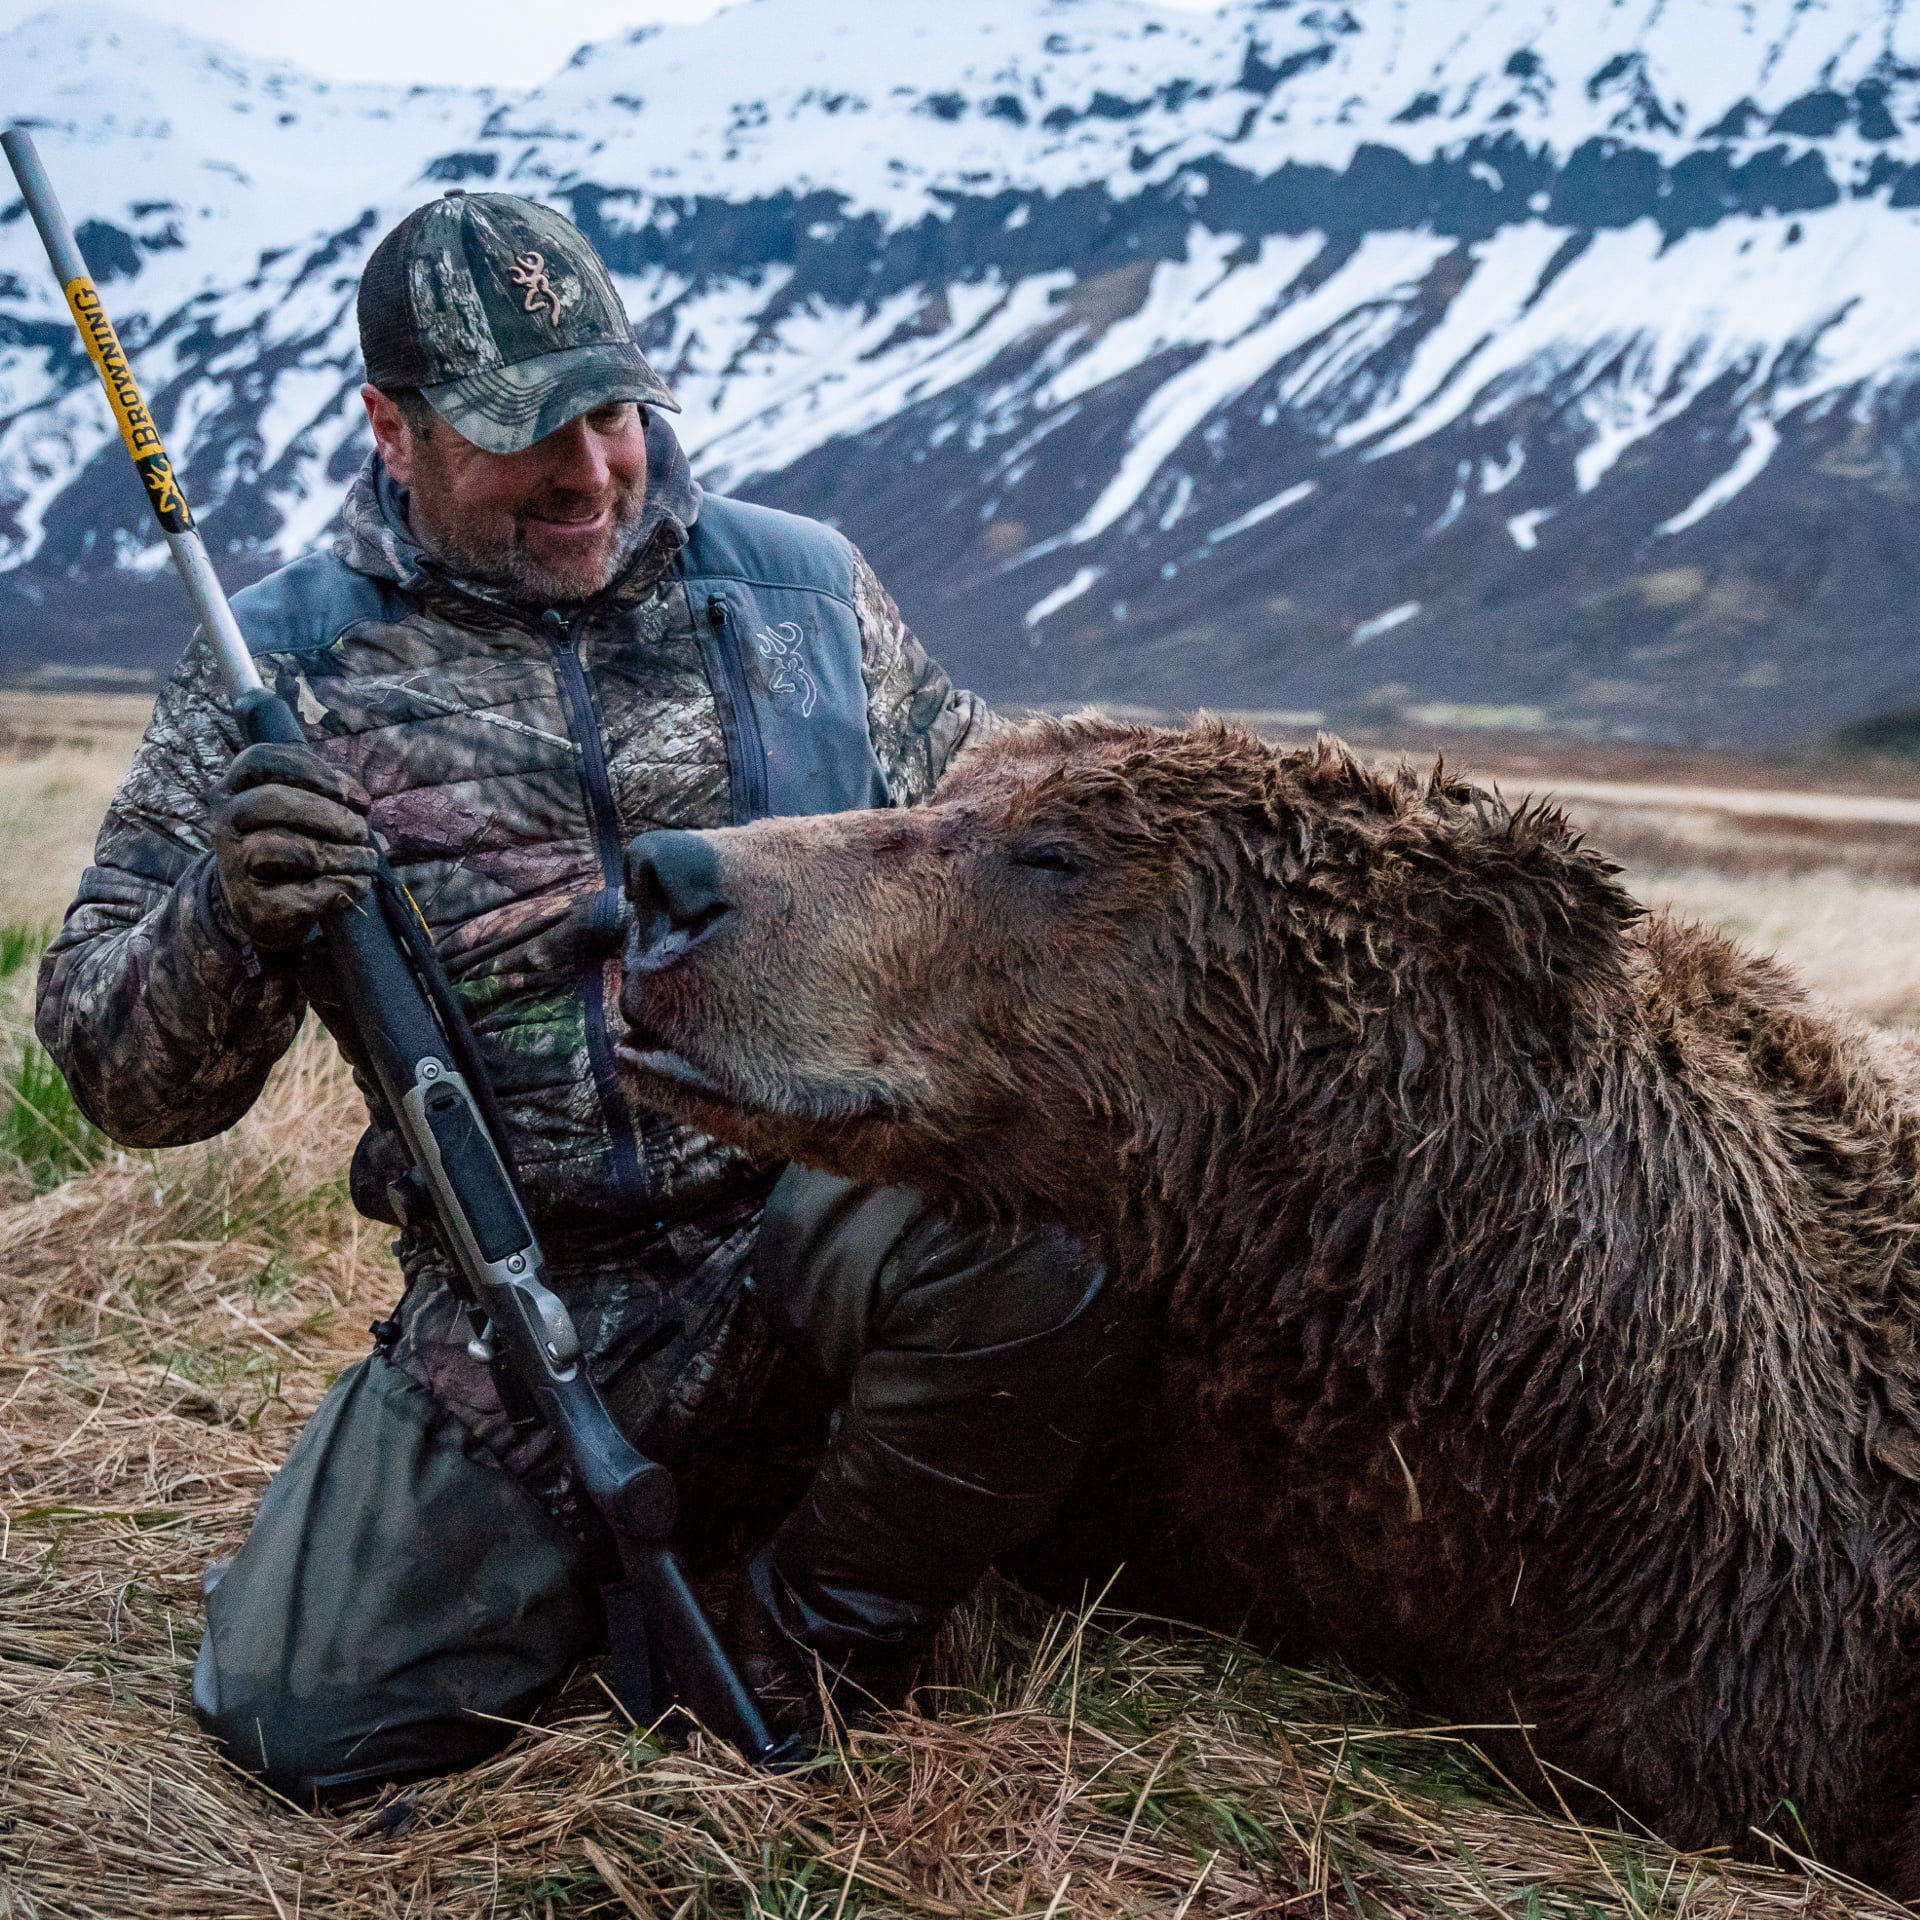 Hunter with bear kill